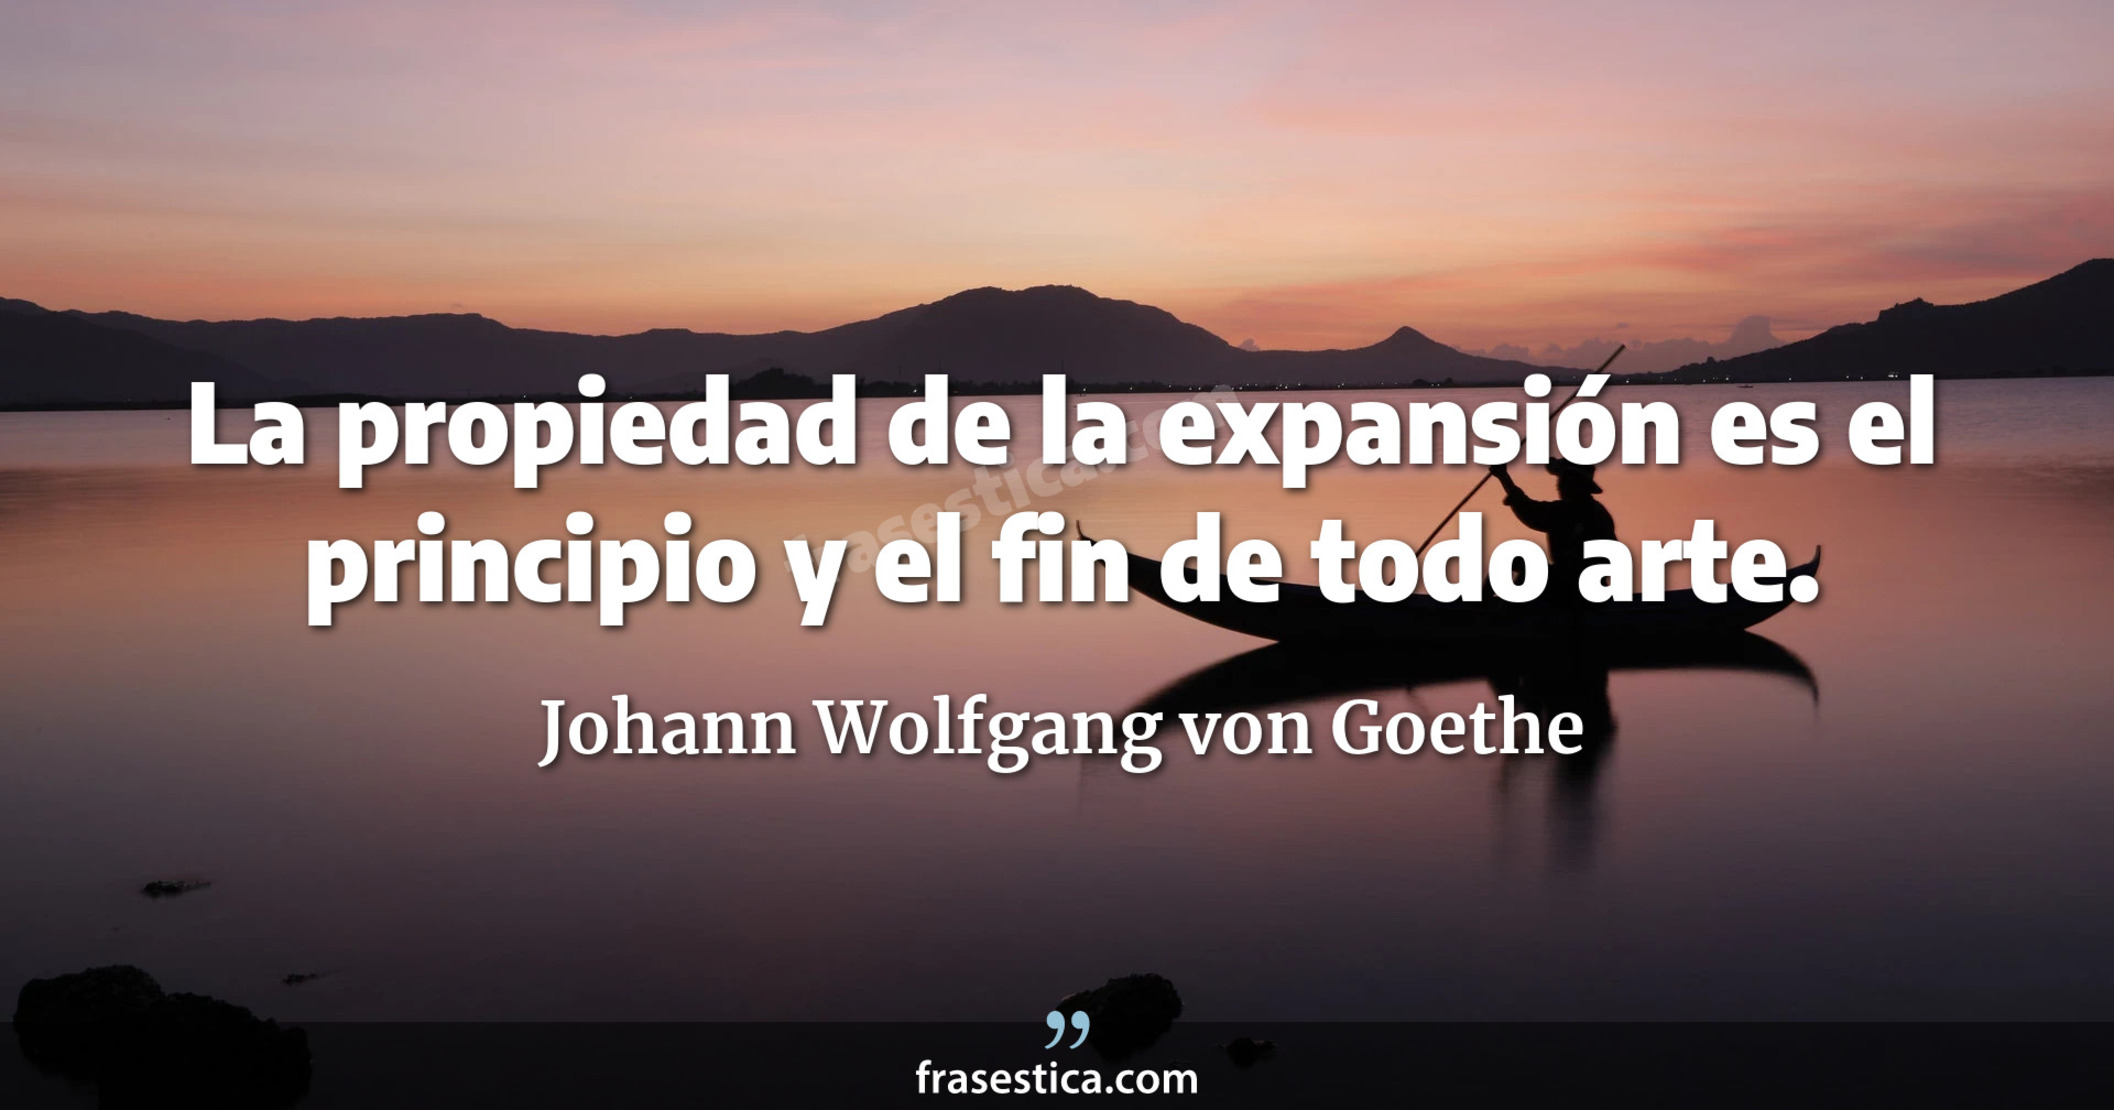 La propiedad de la expansión es el principio y el fin de todo arte. - Johann Wolfgang von Goethe